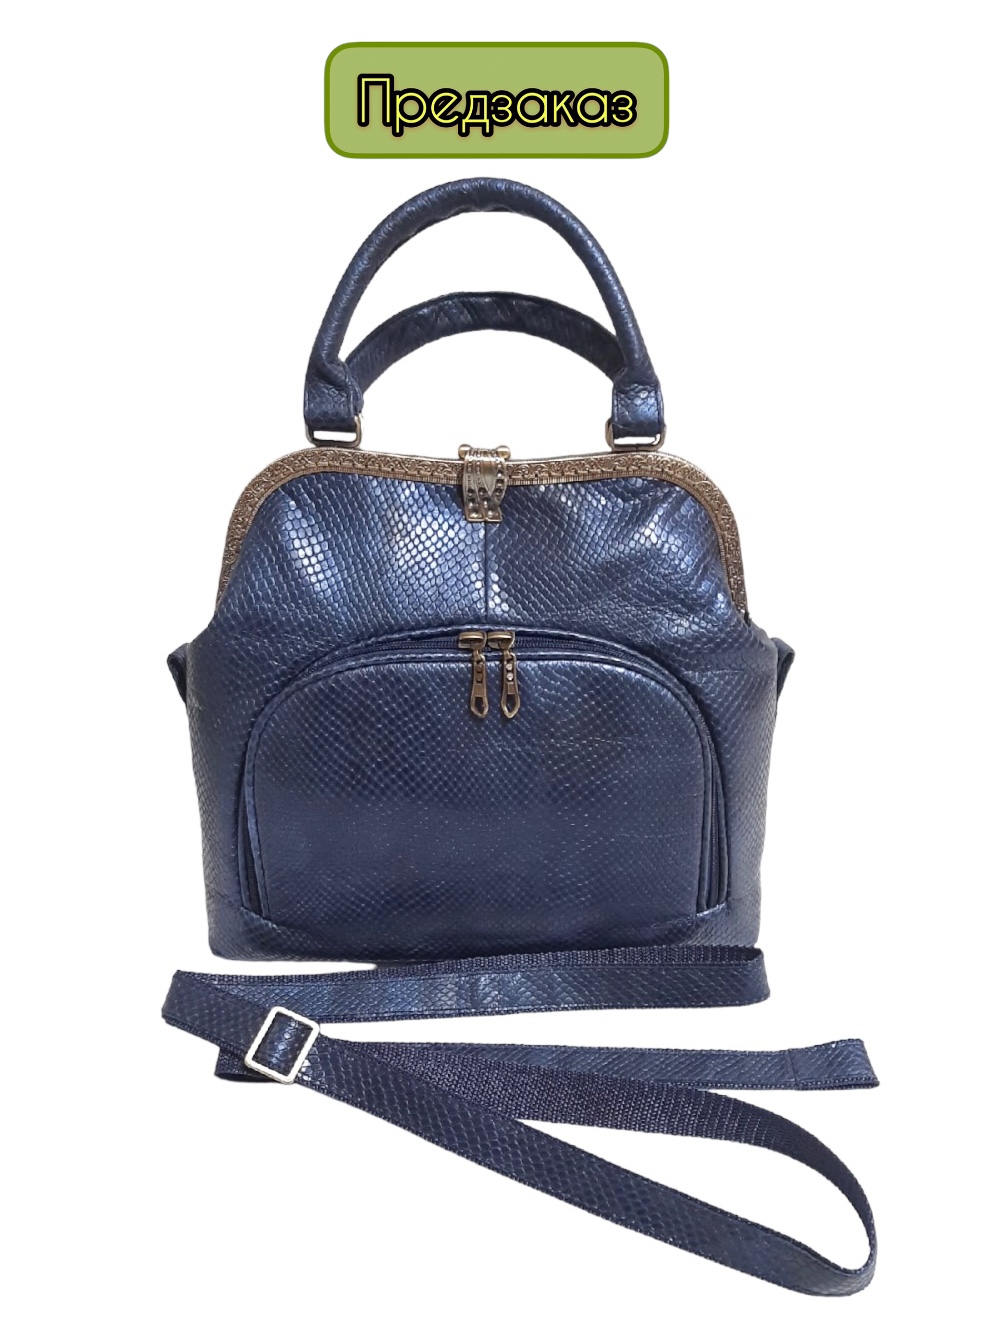 картинка кожаные  "Лерден-06" - Женская кожаная сумка с фермуаром. Синяя рептилия, тиснение, антик от Ирины Берзиной